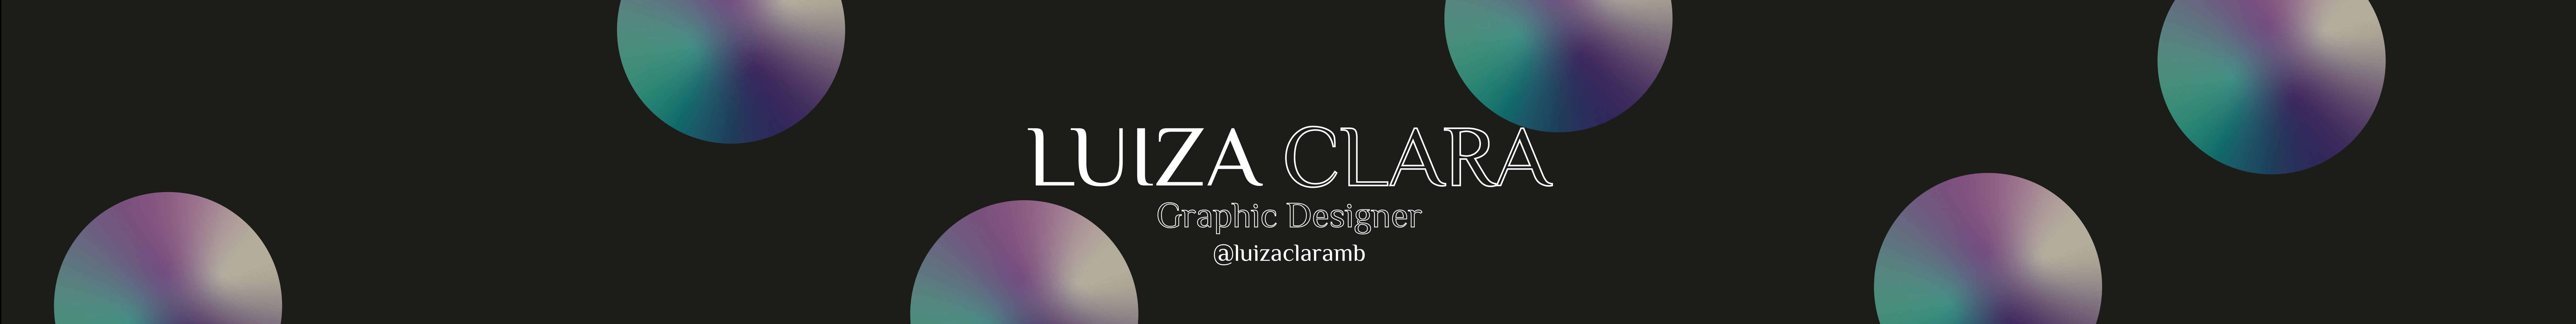 Profil-Banner von Luiza Clara